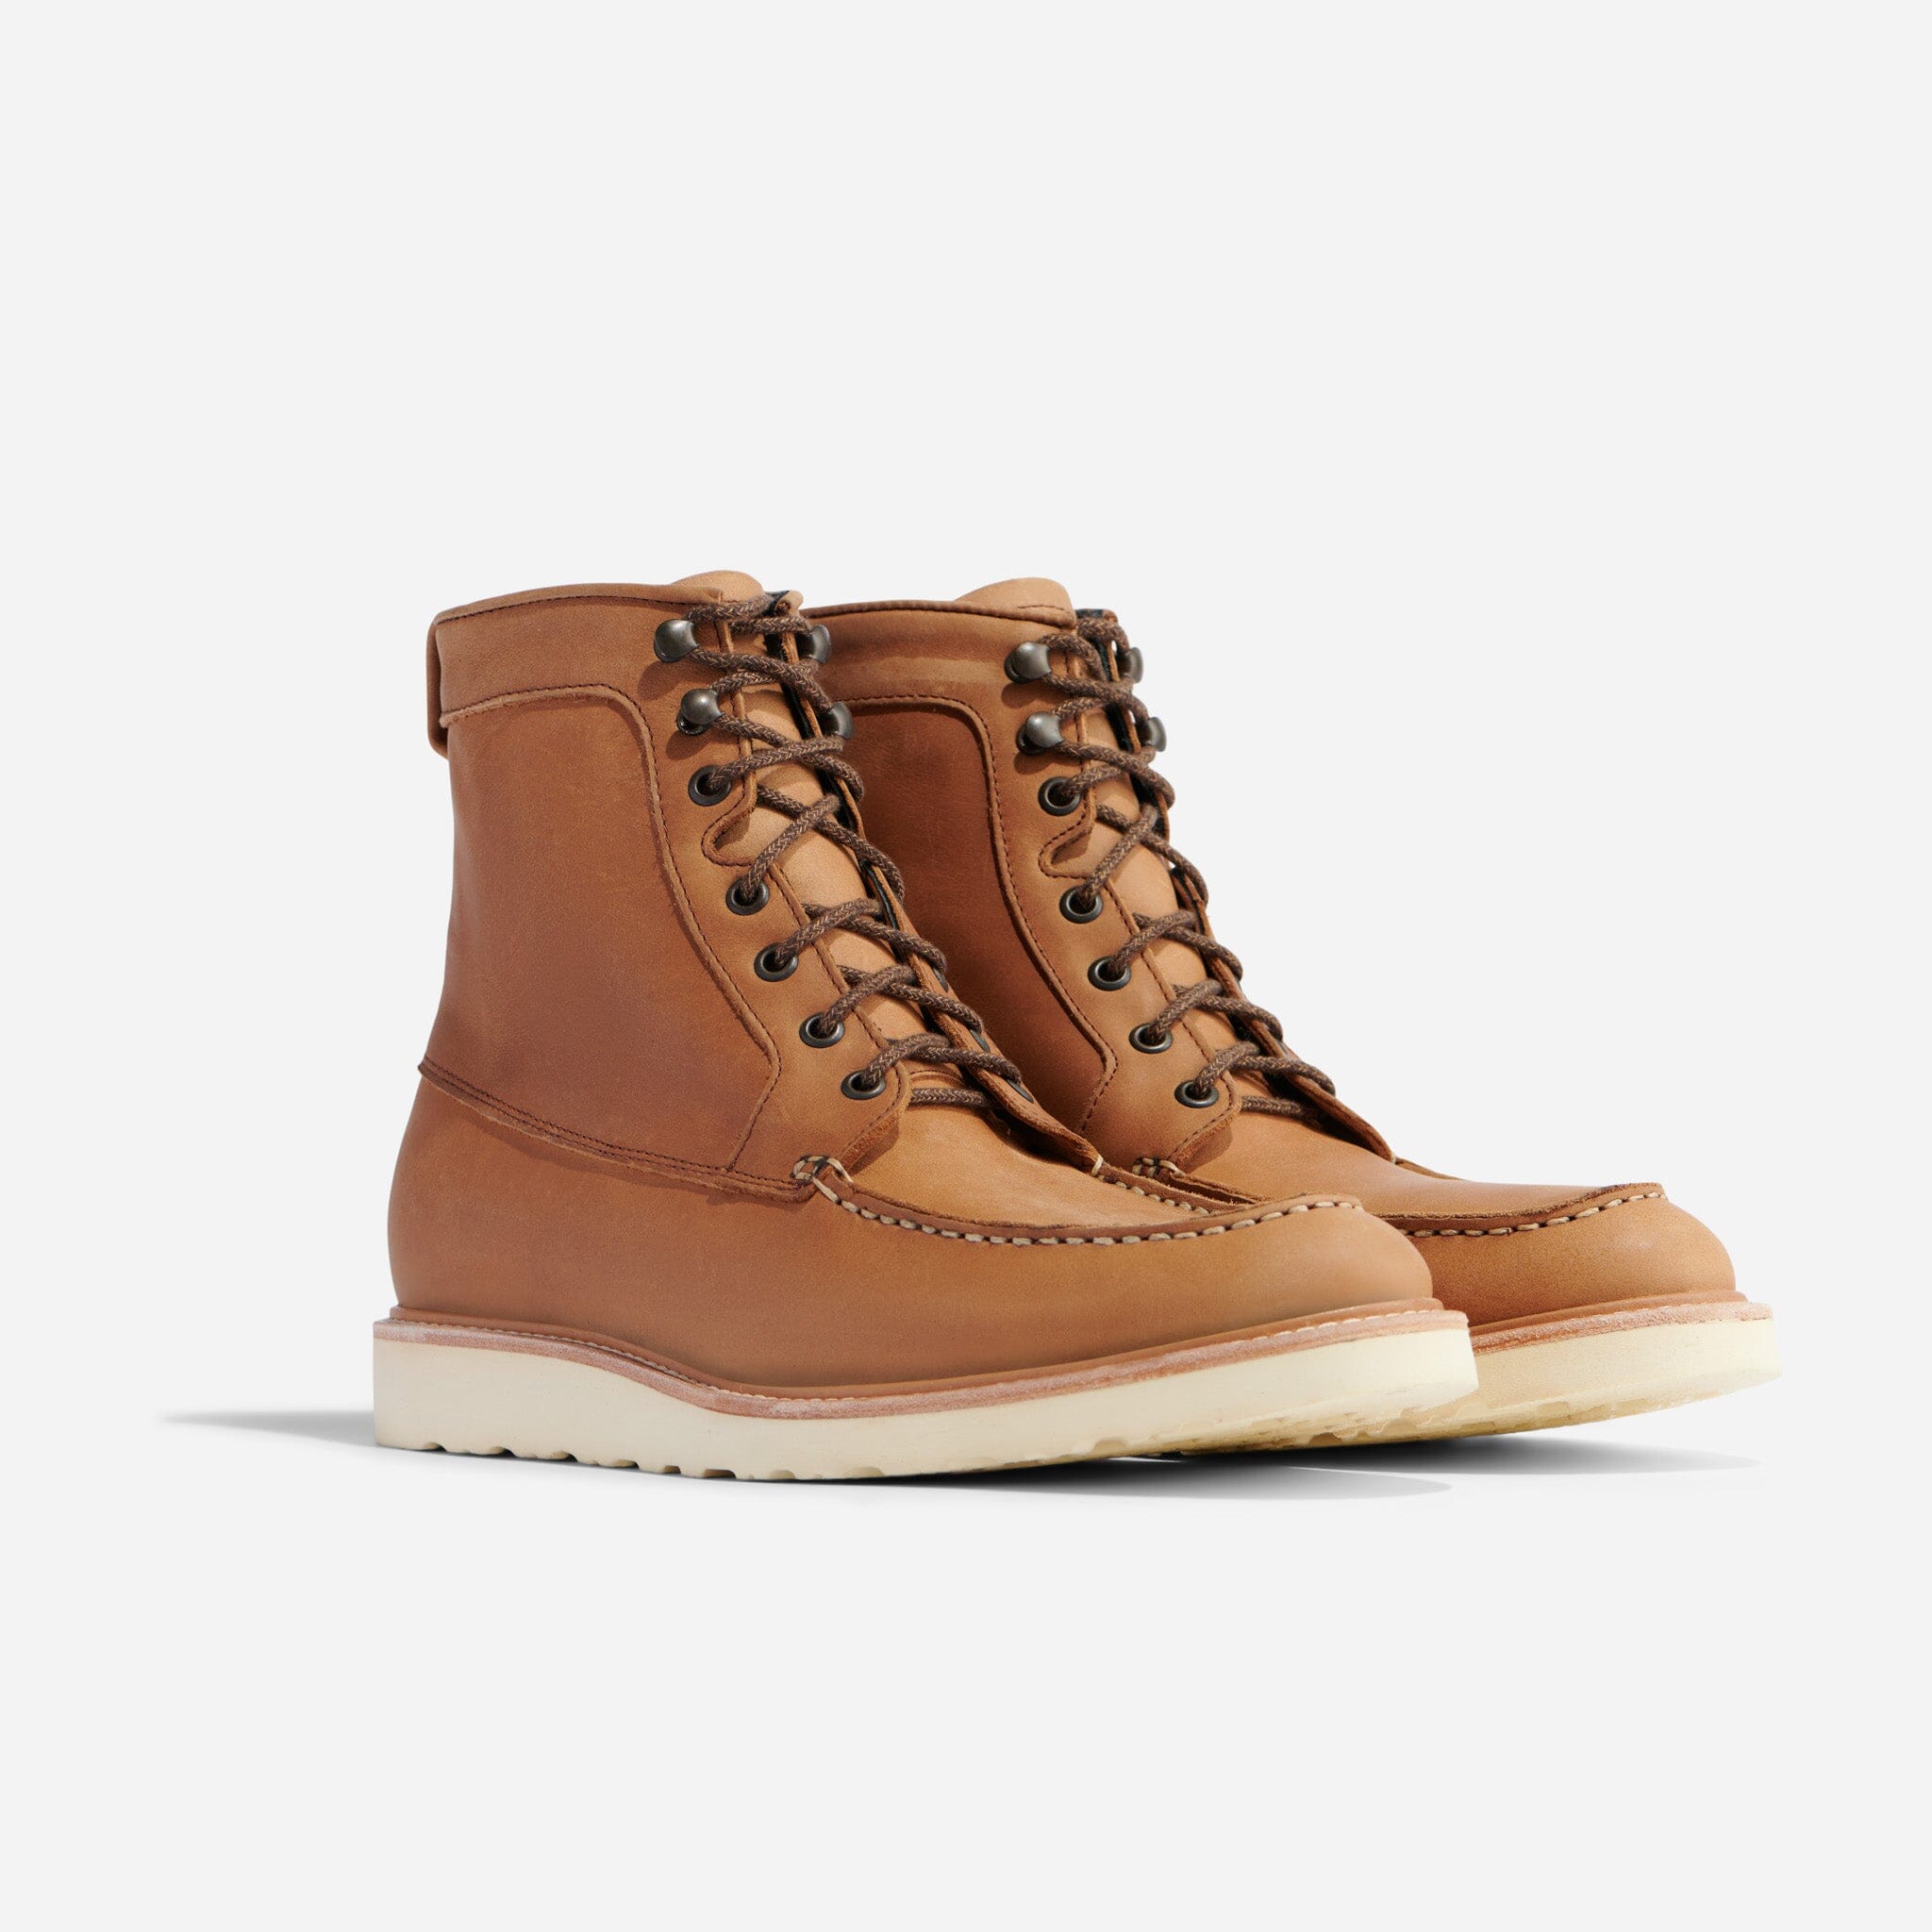 Boot Hooks Long - Montana Leather Company